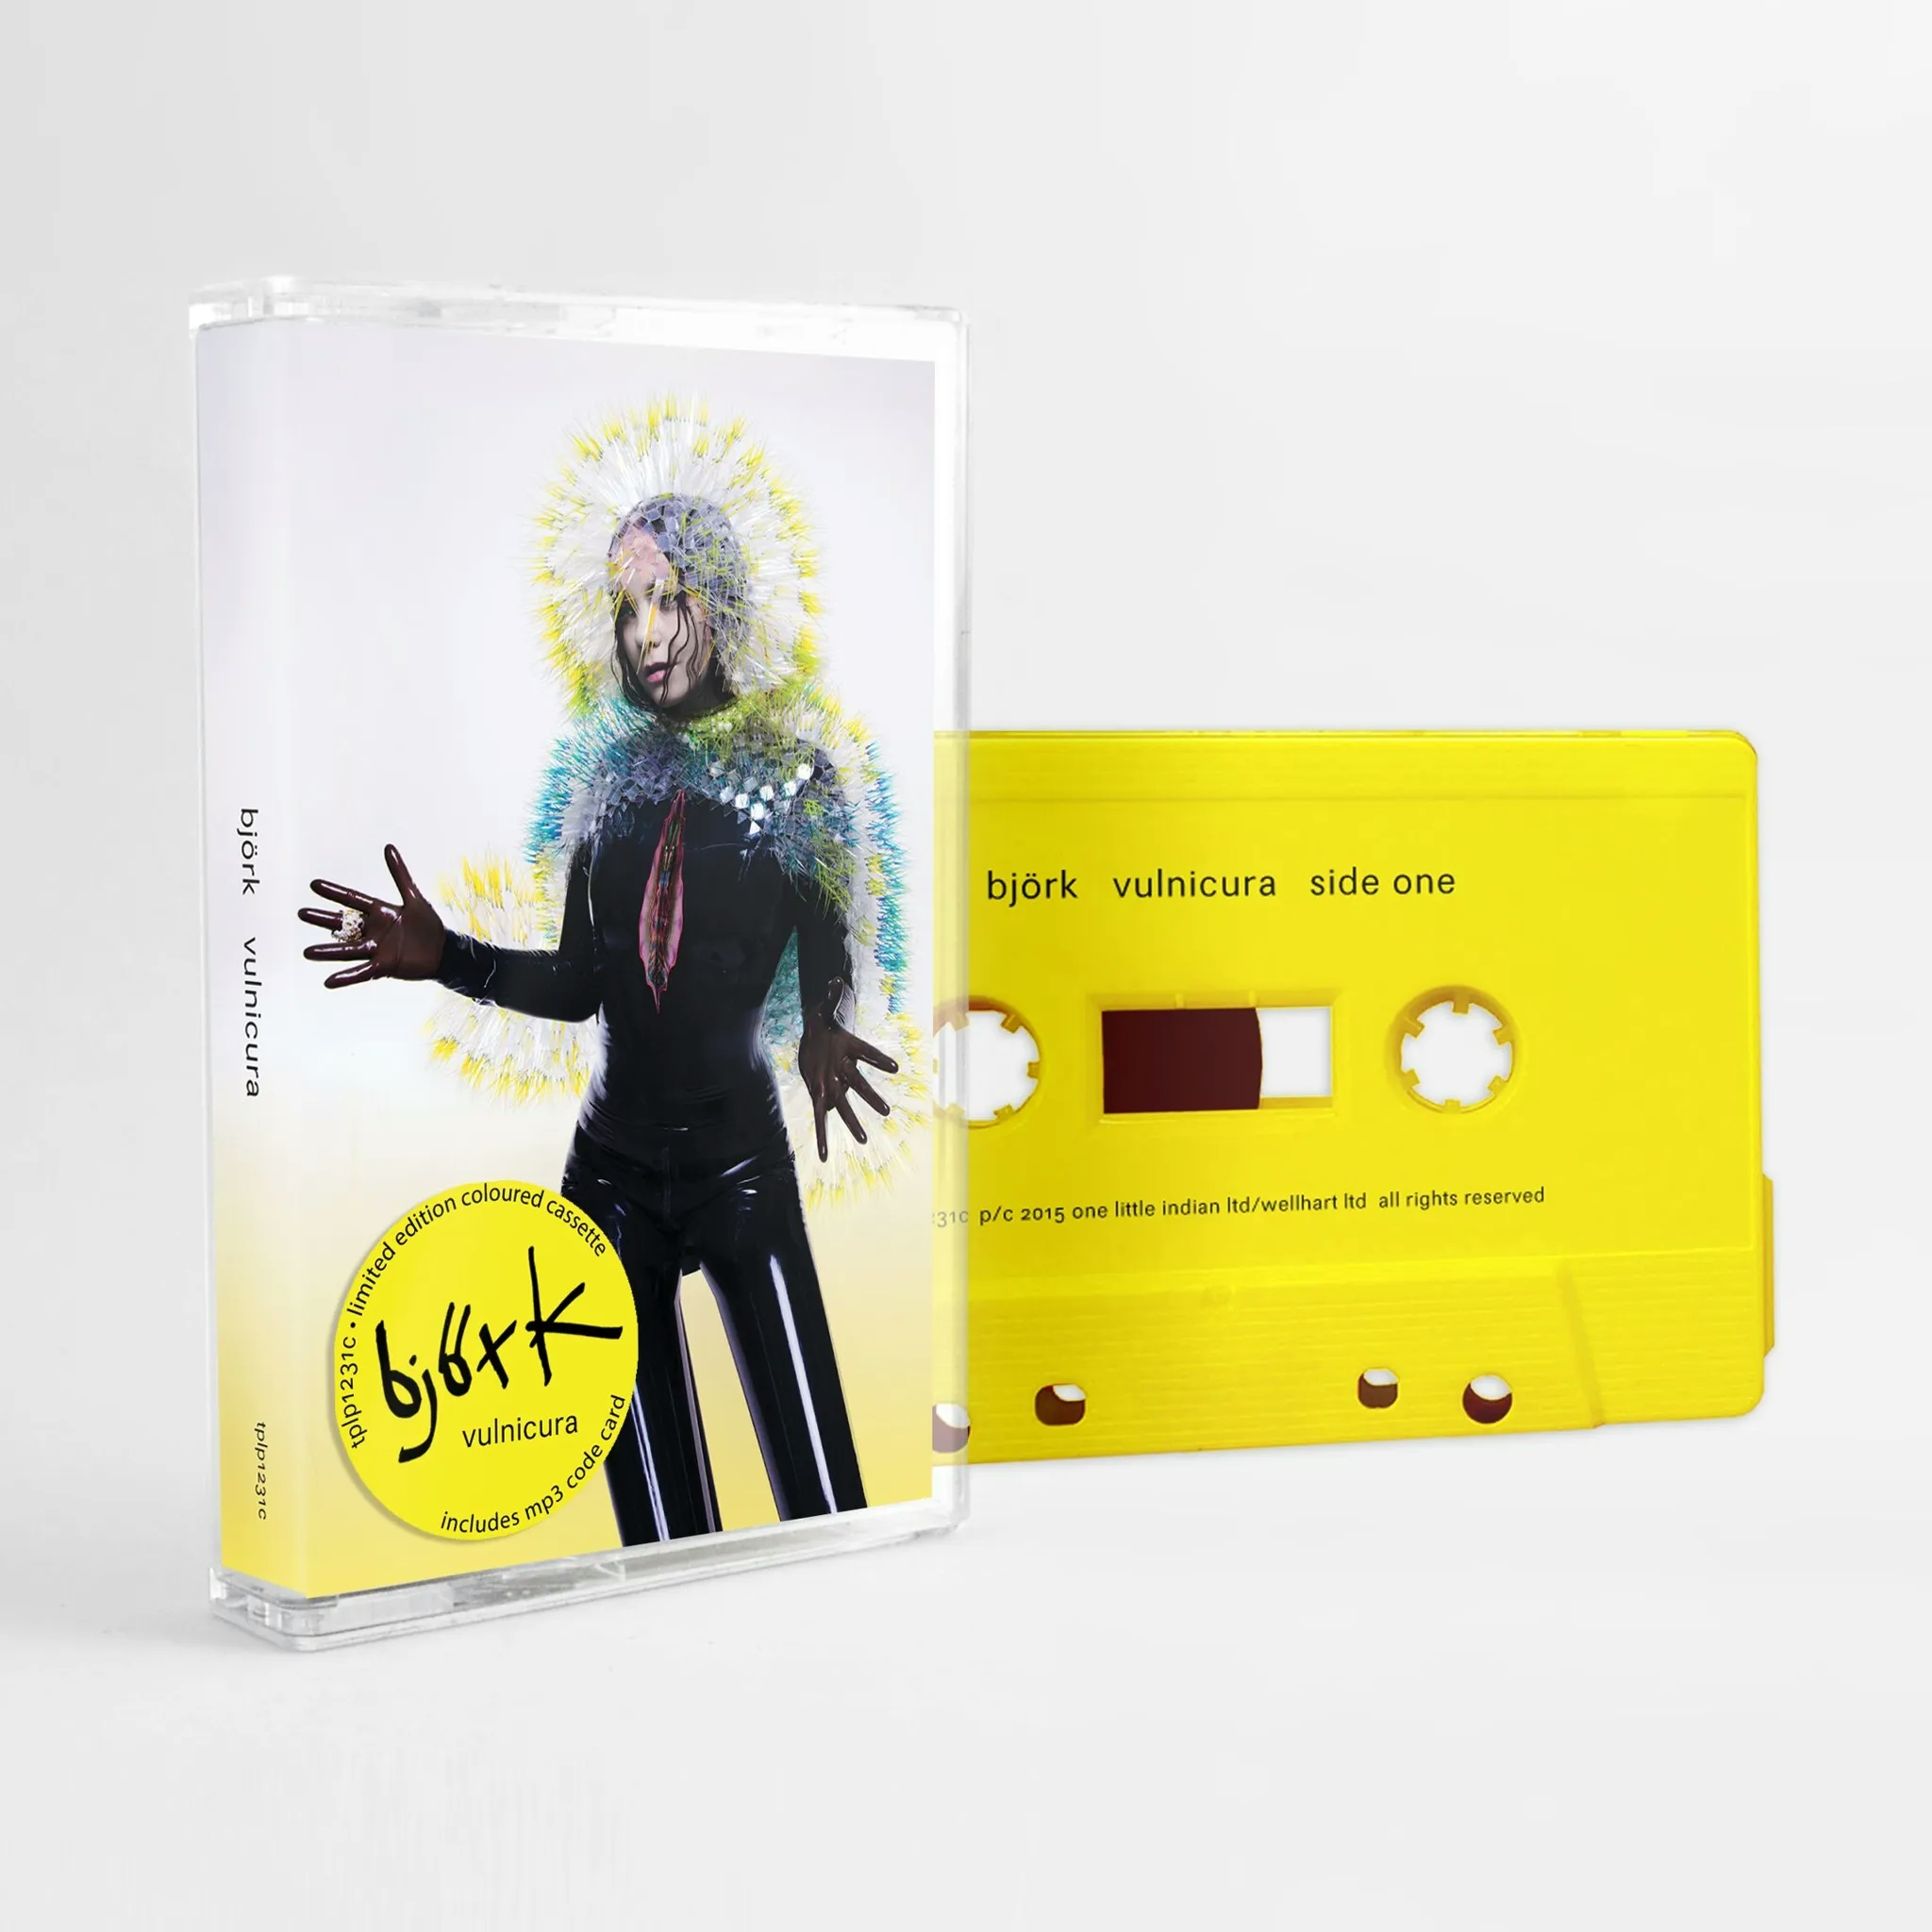 Album artwork for Vulnicura by Björk